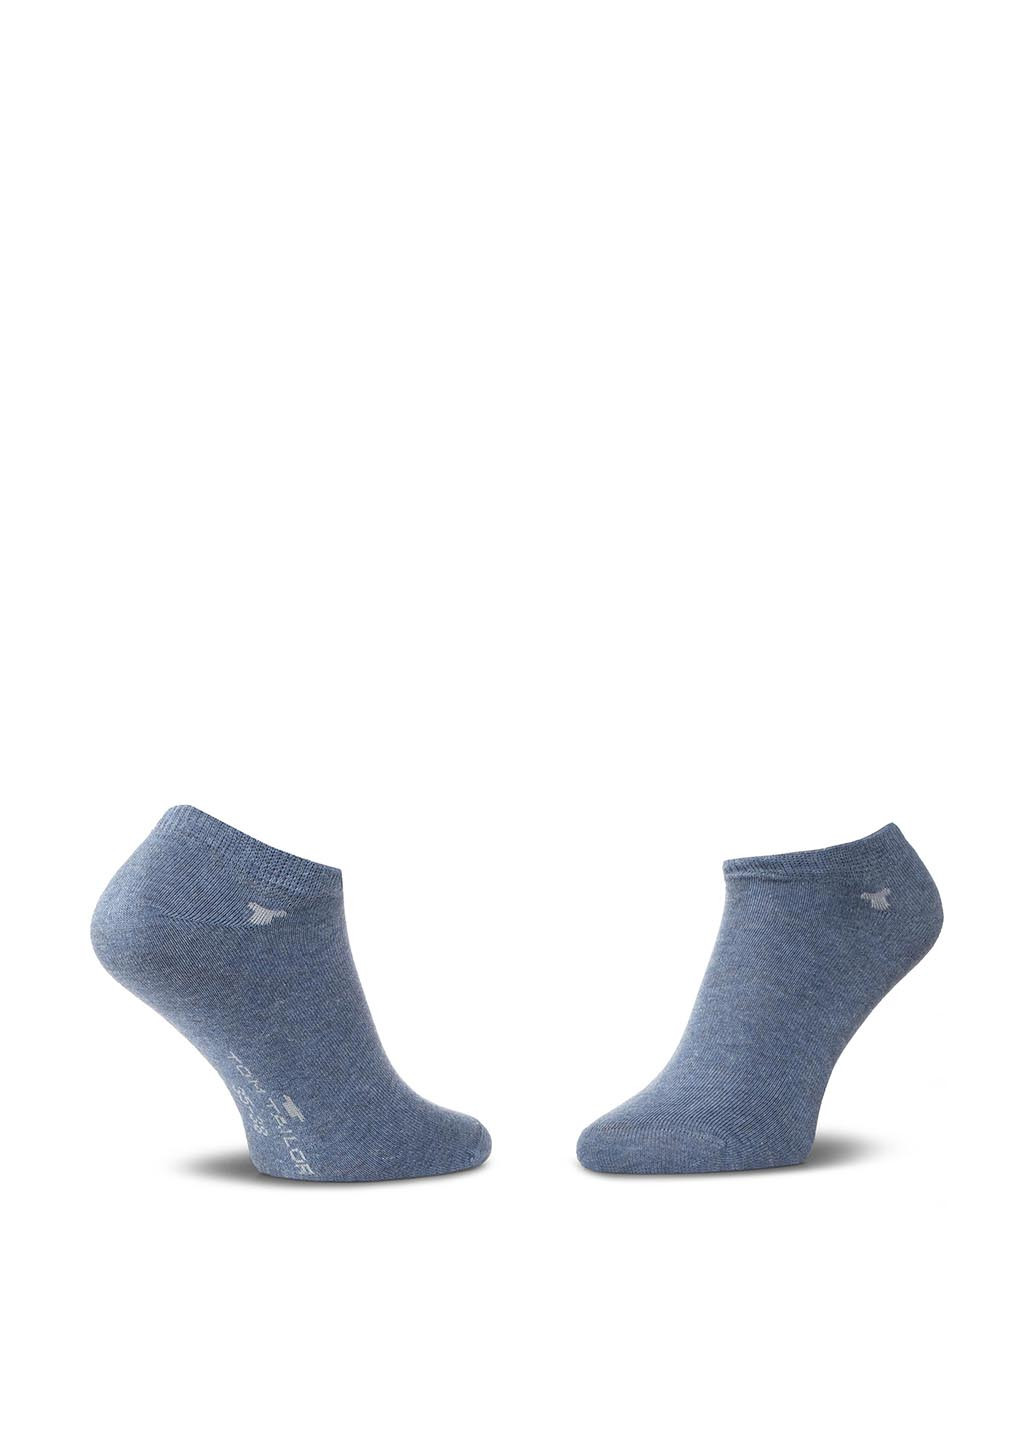 Шкарпетки чоловічі Tom Tailor 90190C 35-38 BLUE/DARK BLUE Tom Tailor 90190c 35-38 blue/dark blue (221794841)